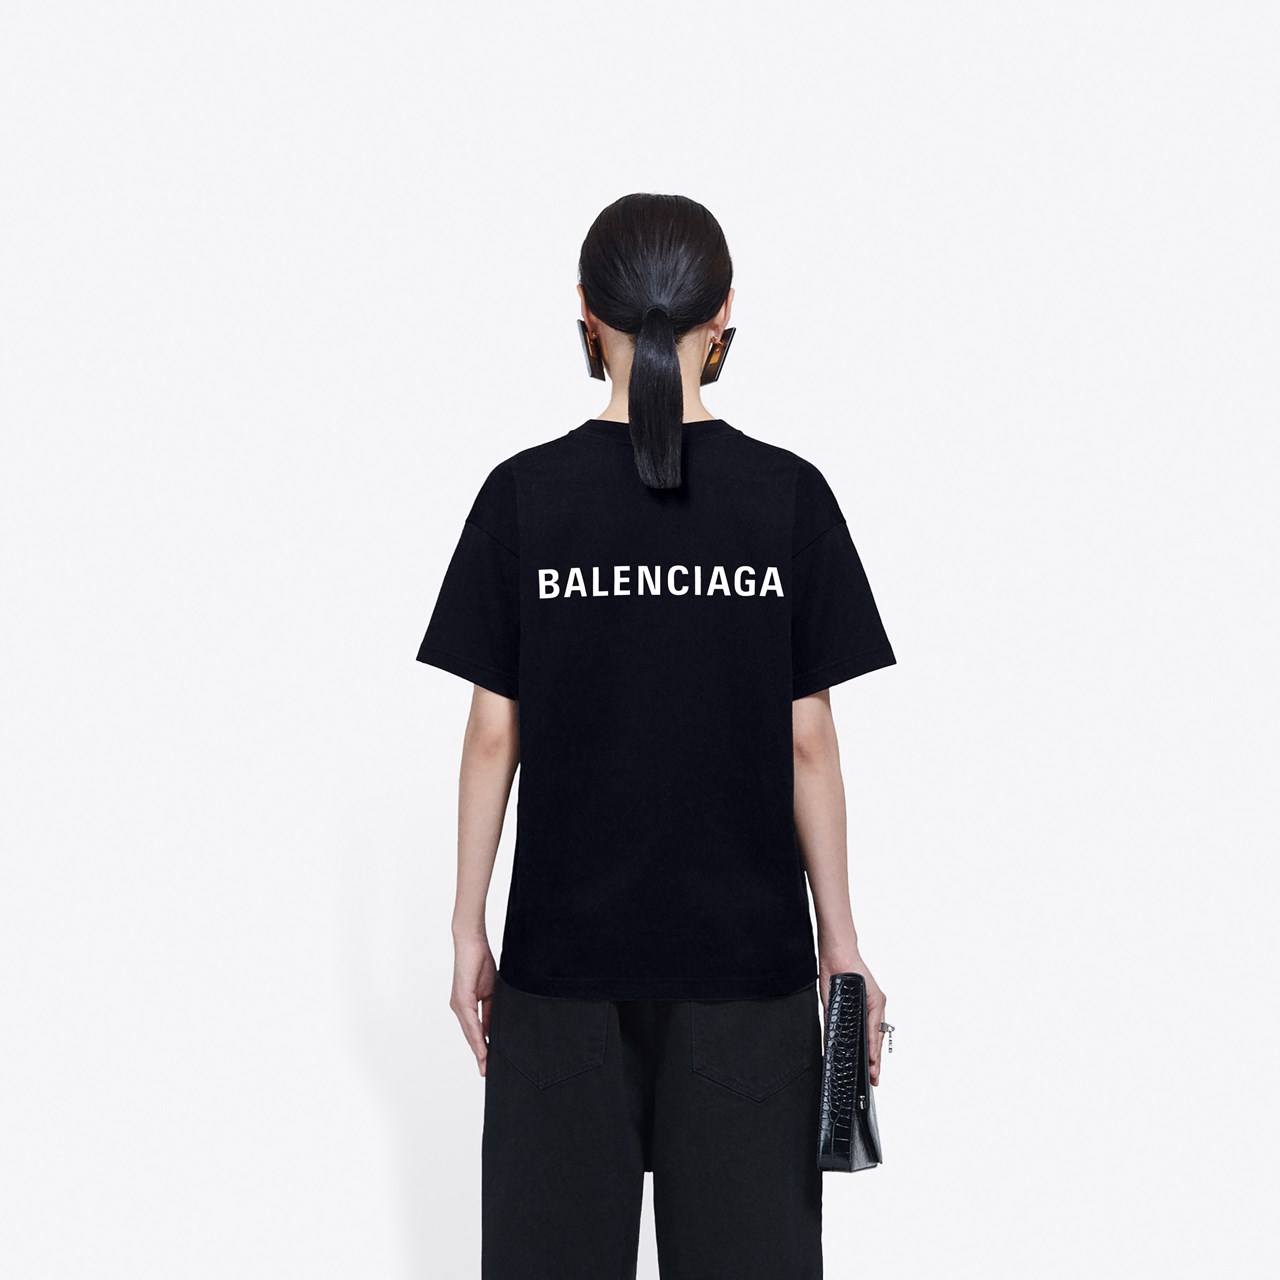 BALENCIAGA Tシャツ LARGEFIT バレンシアガ ラージフィットTシャツ 2020SS レディース ブラック ホワイト